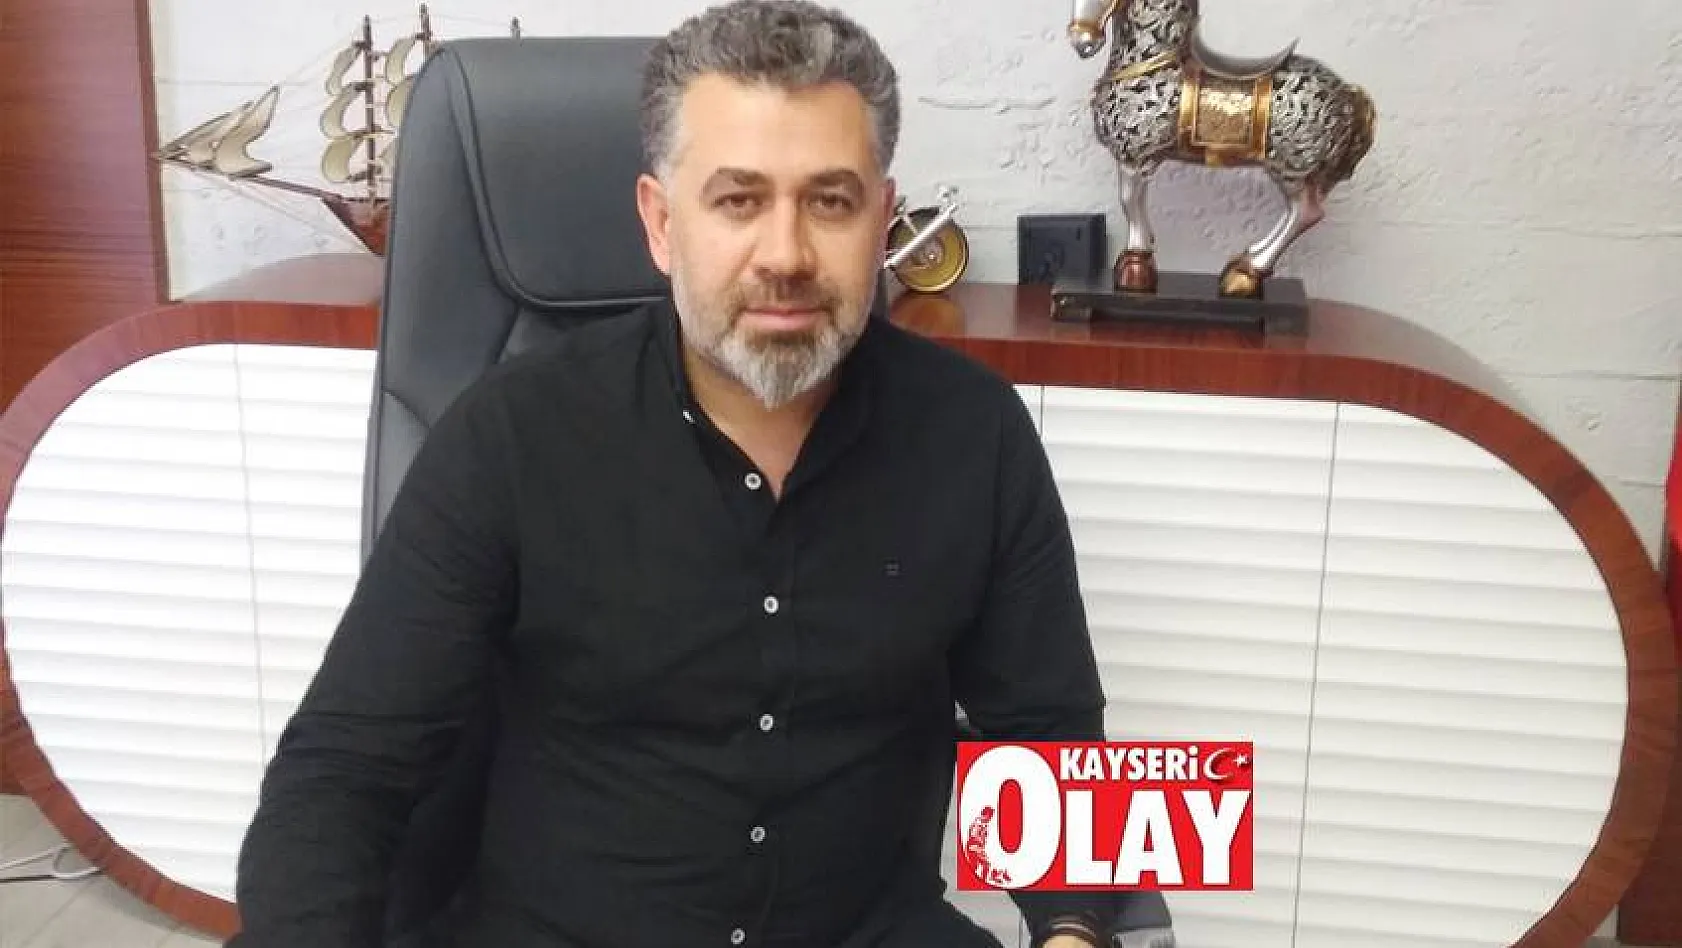 Kayserispor başkan adayı Sedat Kılınç Kayseri Olaya konuştu